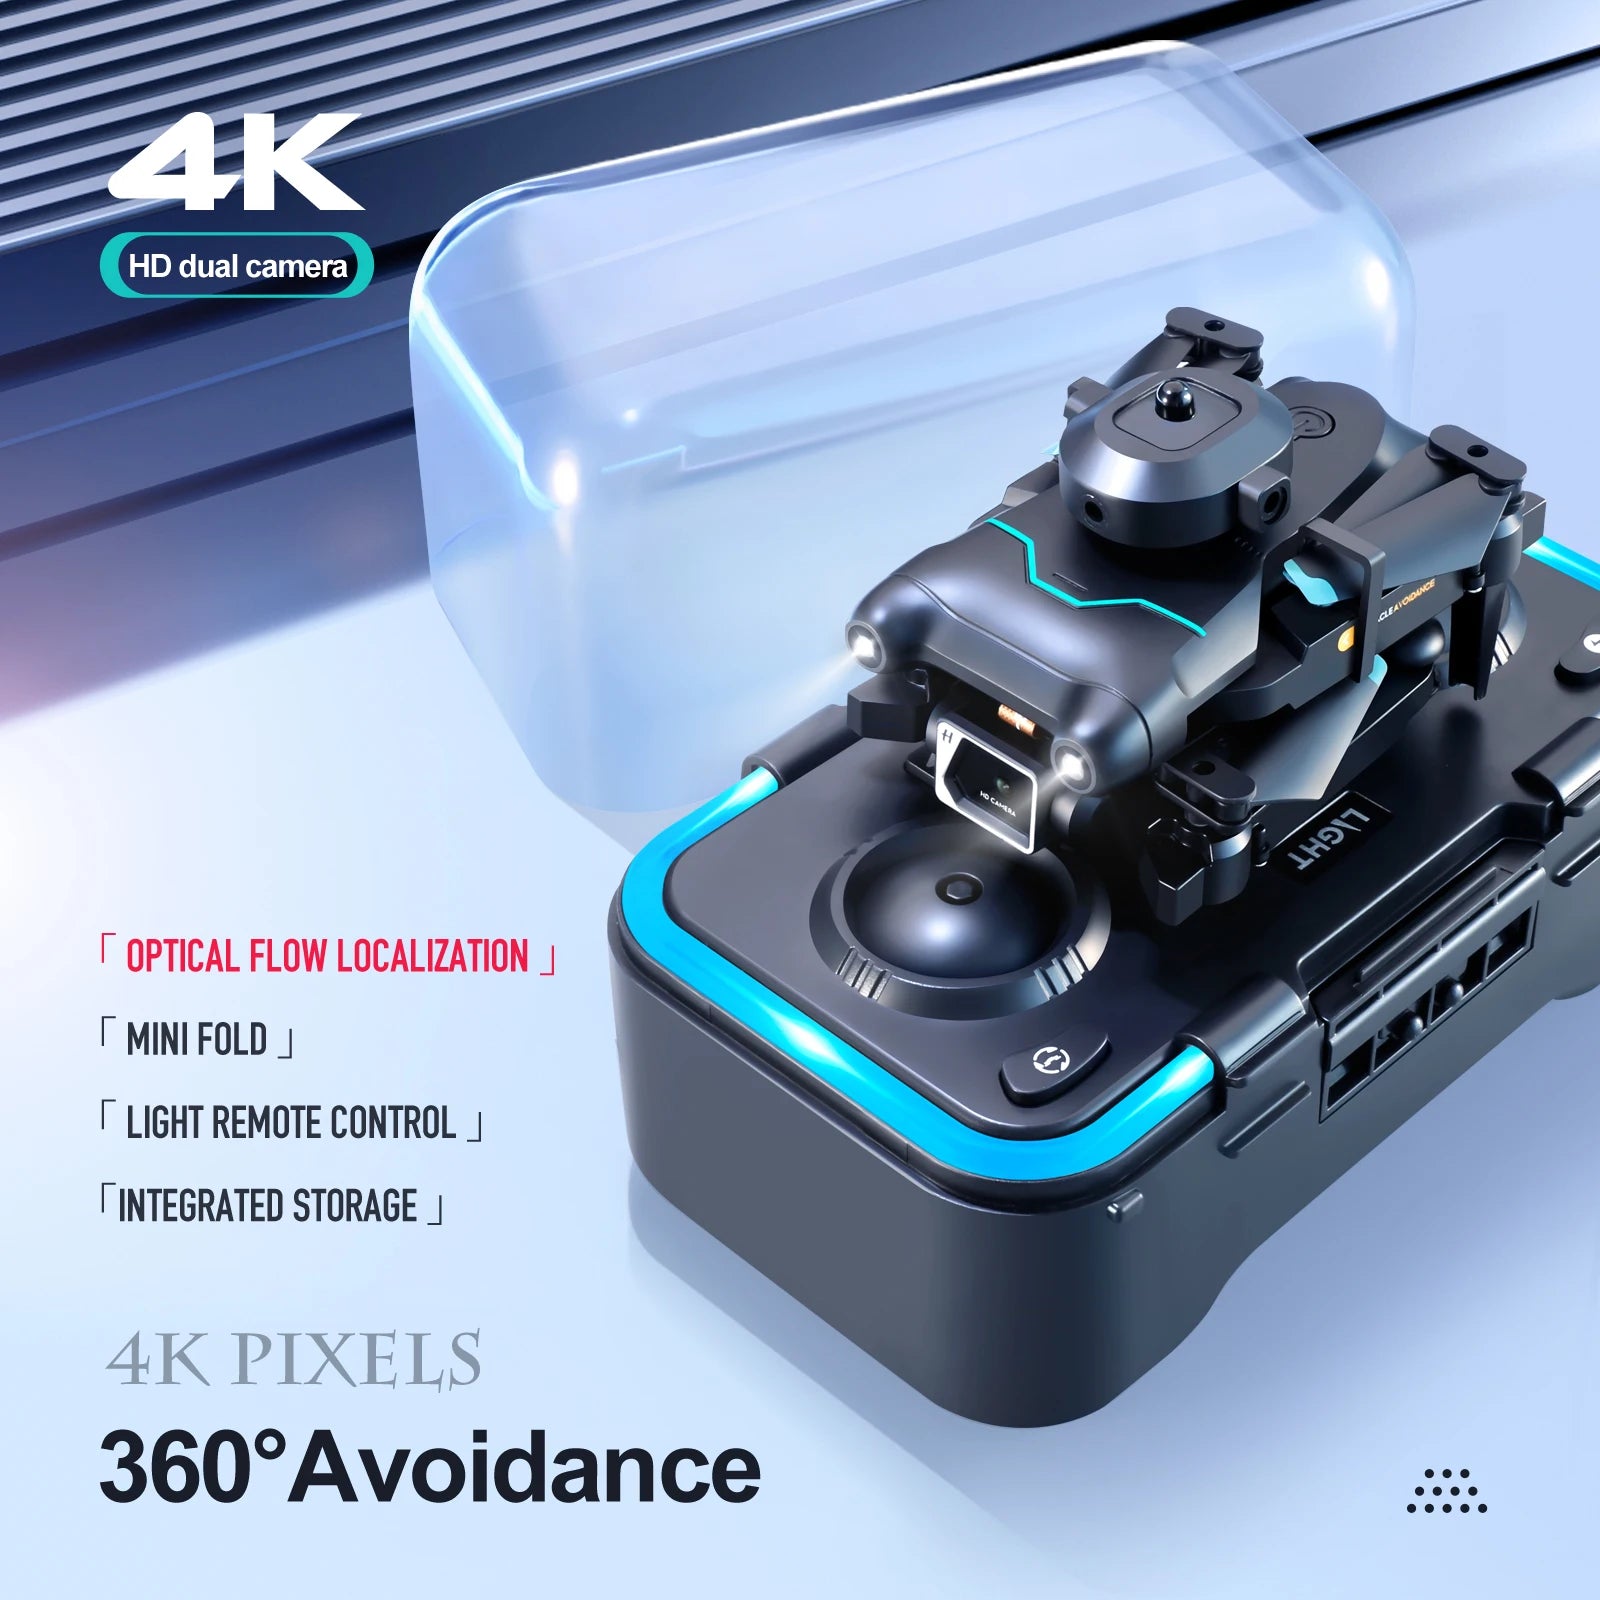 S96 Mini Drone, 4k hd dual camera optical flow localization . mini